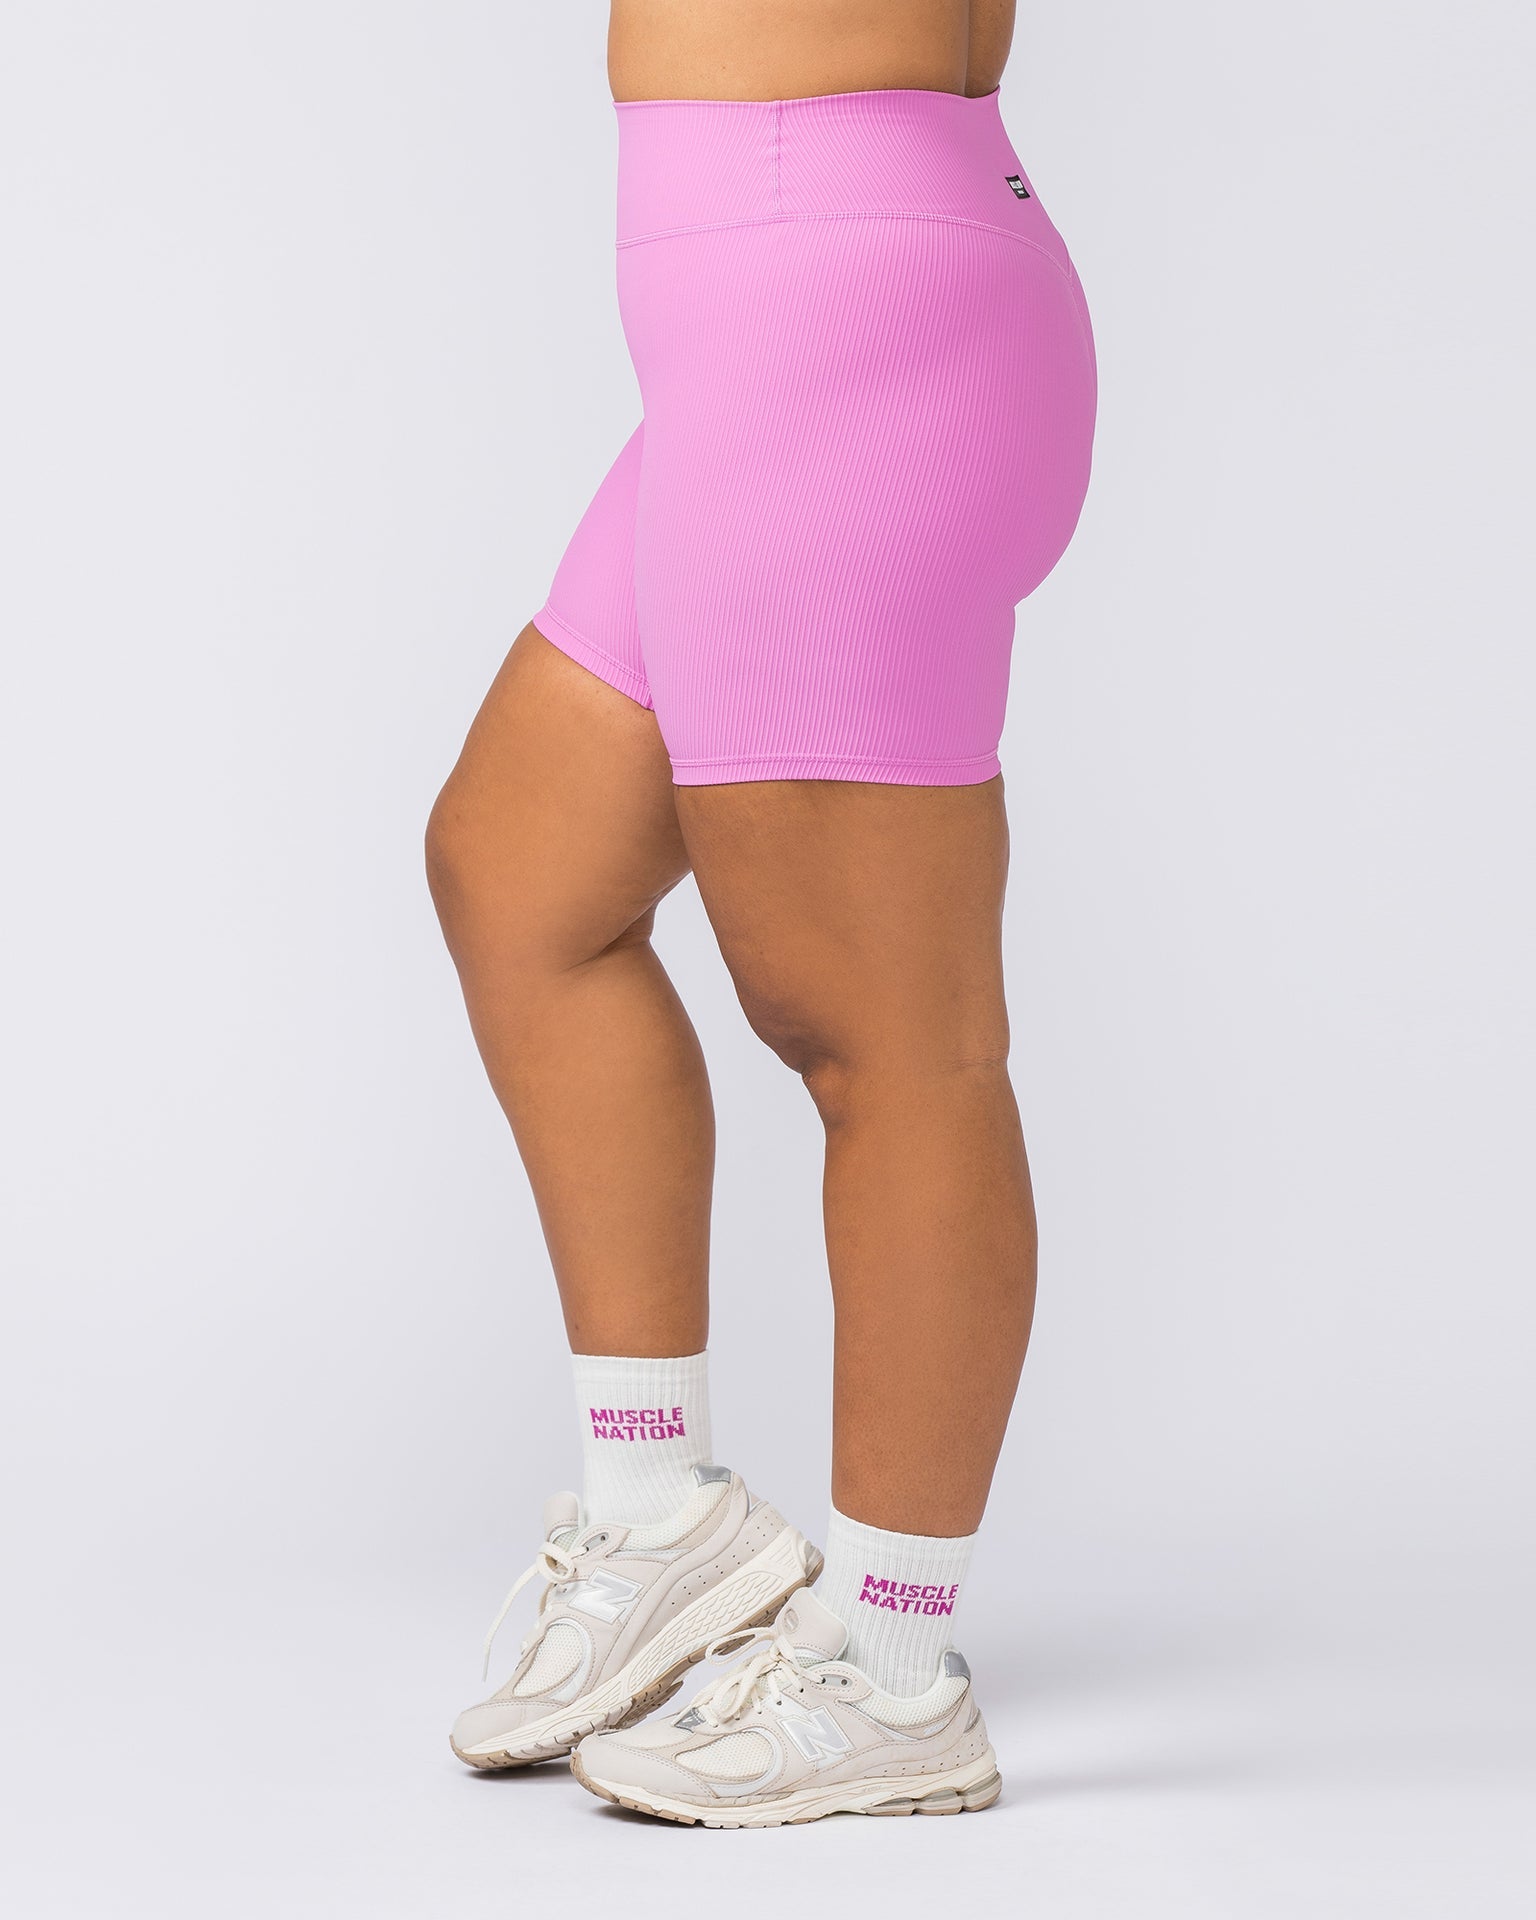 Muscle Nation Bike Shorts Zero Rise Rib Bike Shorts - Fondant Pink